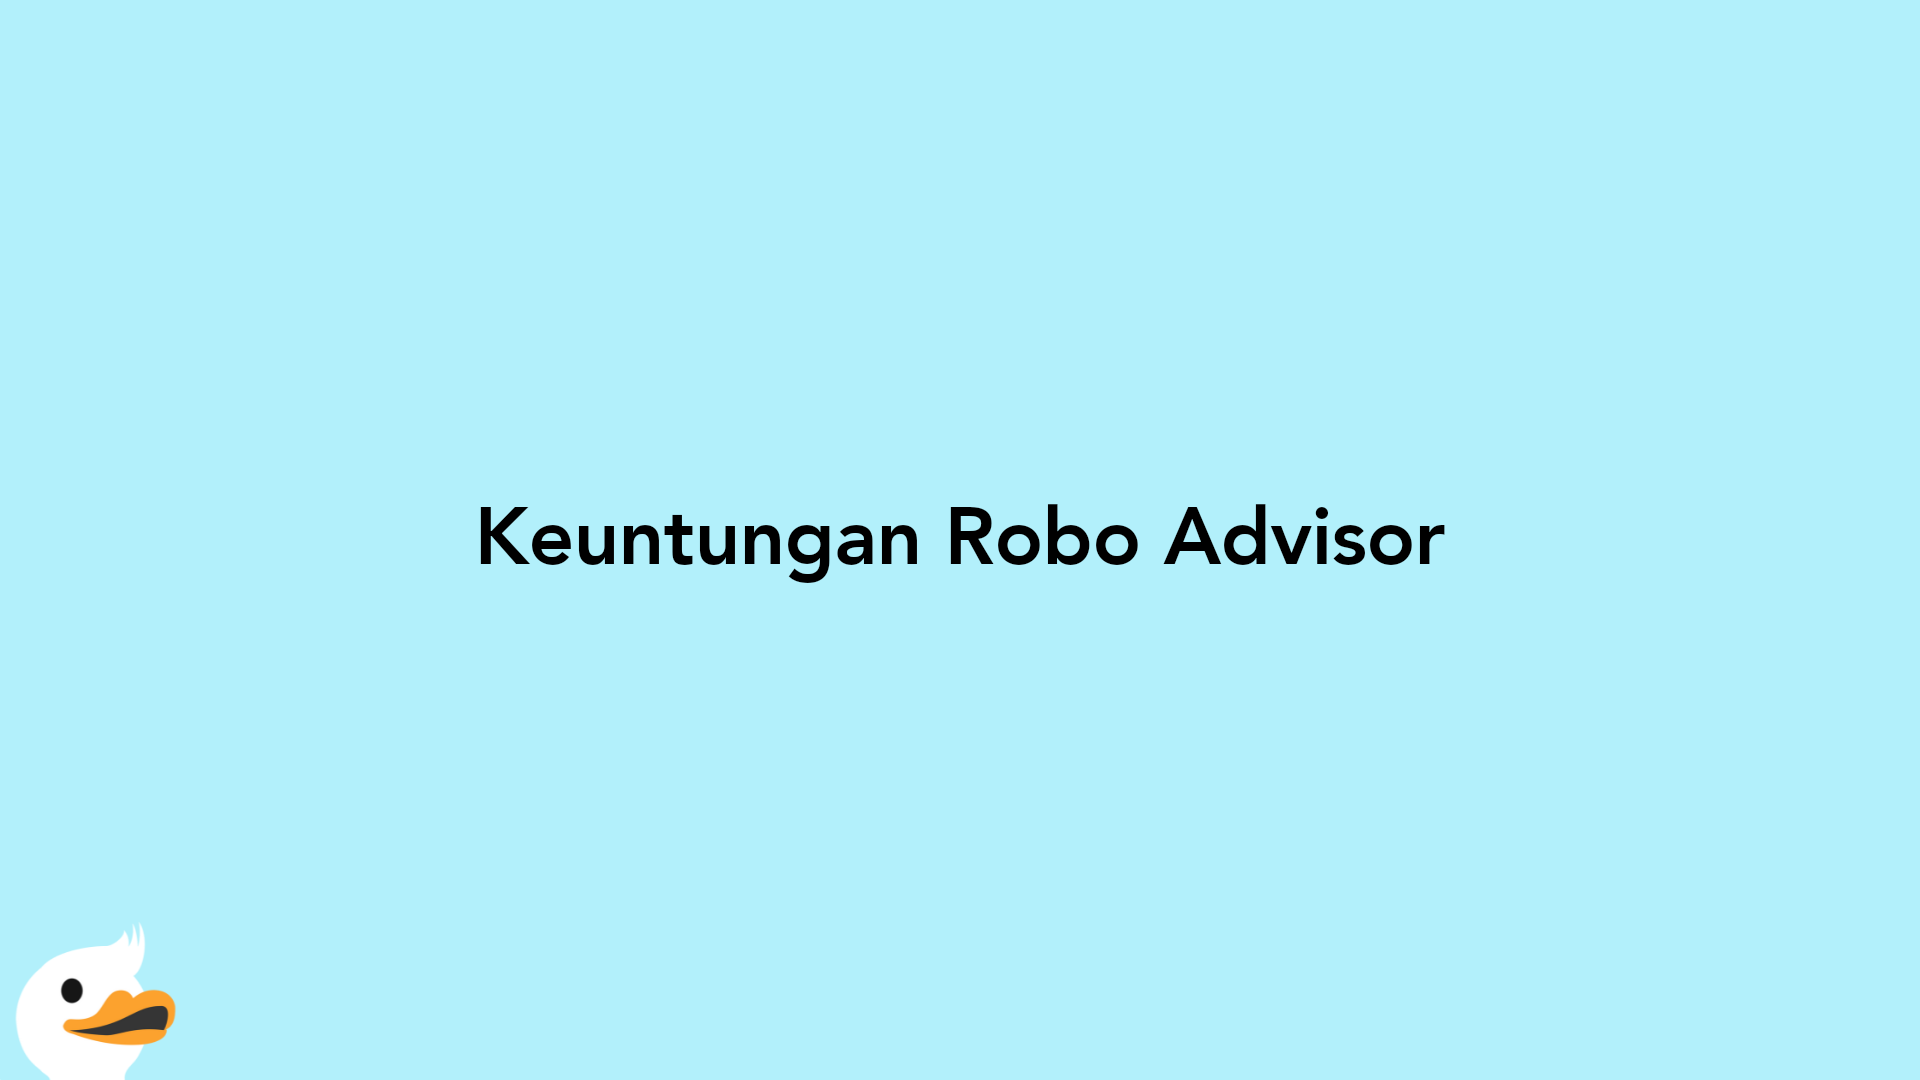 Keuntungan Robo Advisor